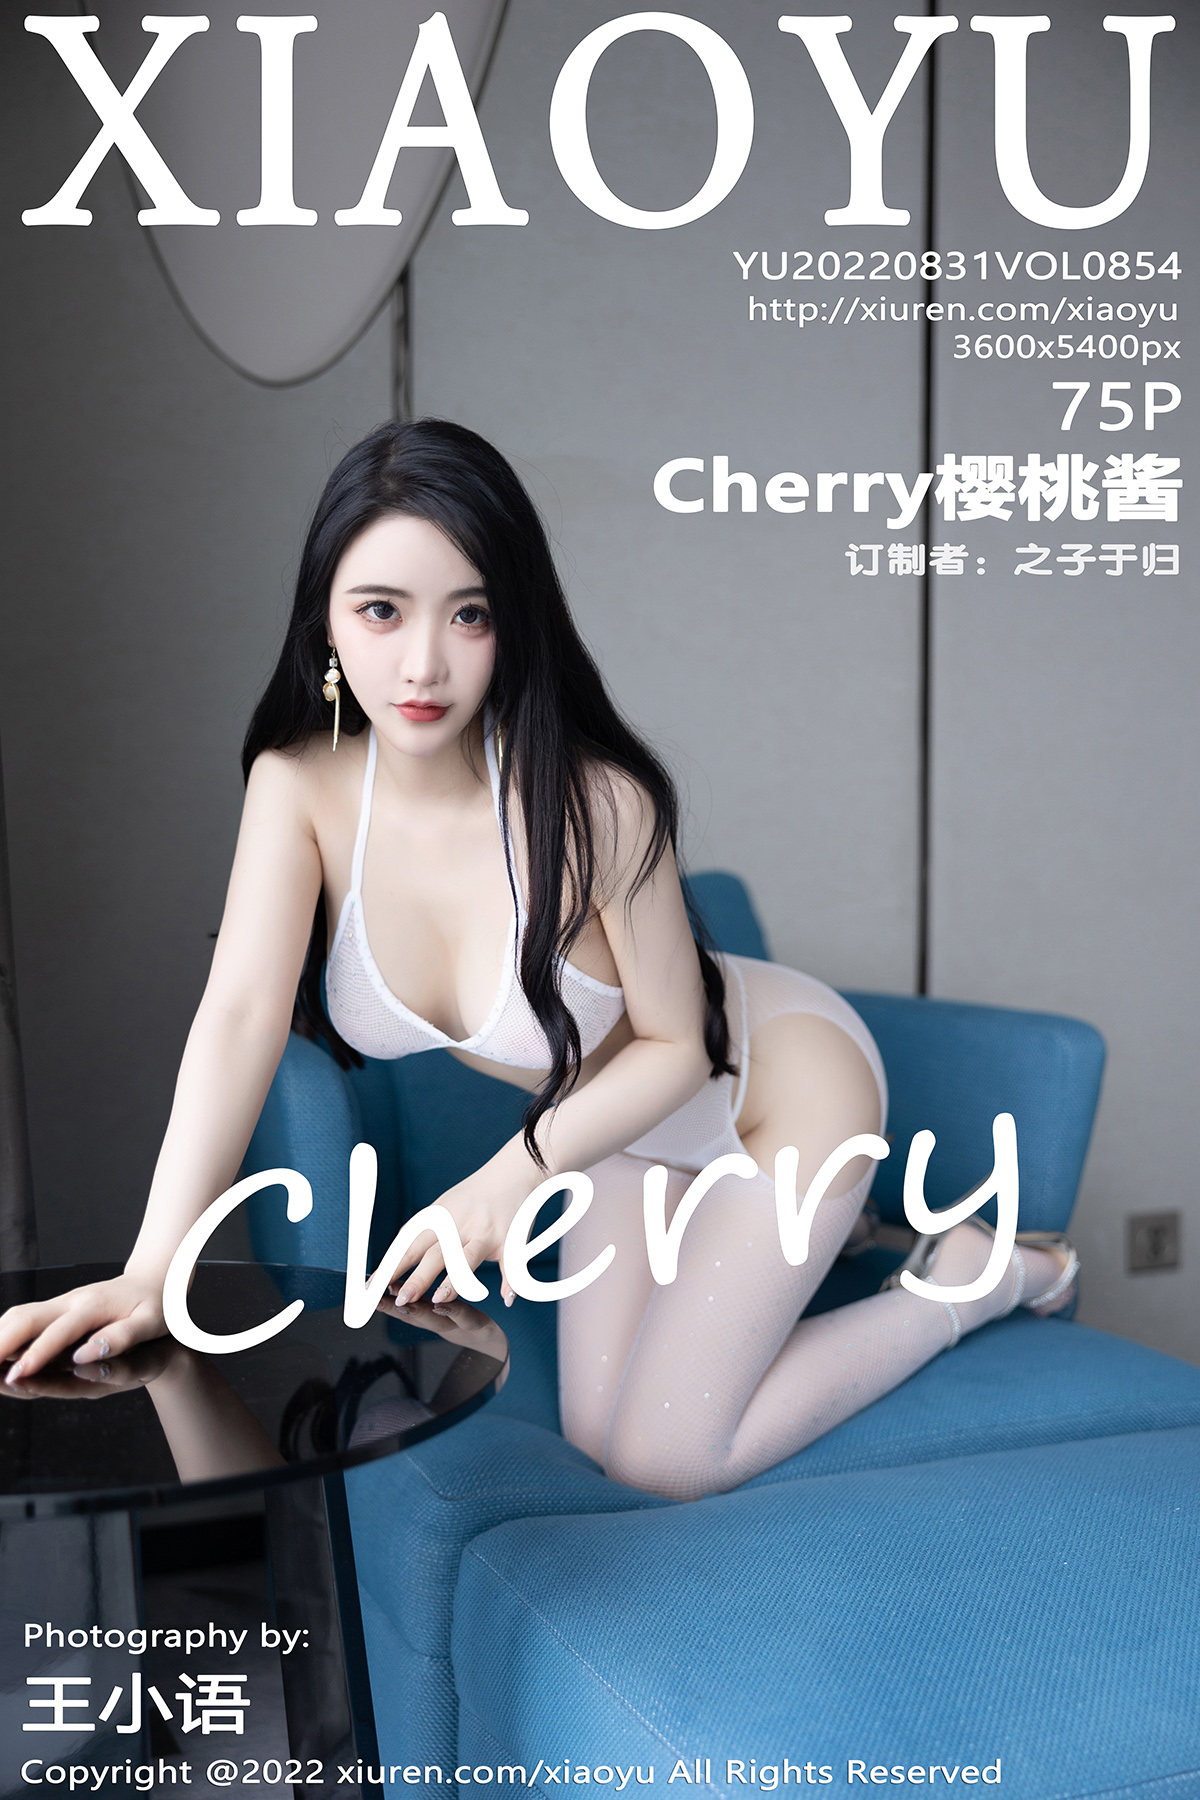 语画界 [XIAOYU] 2022.08.31 VOL.854 Cherry樱桃酱